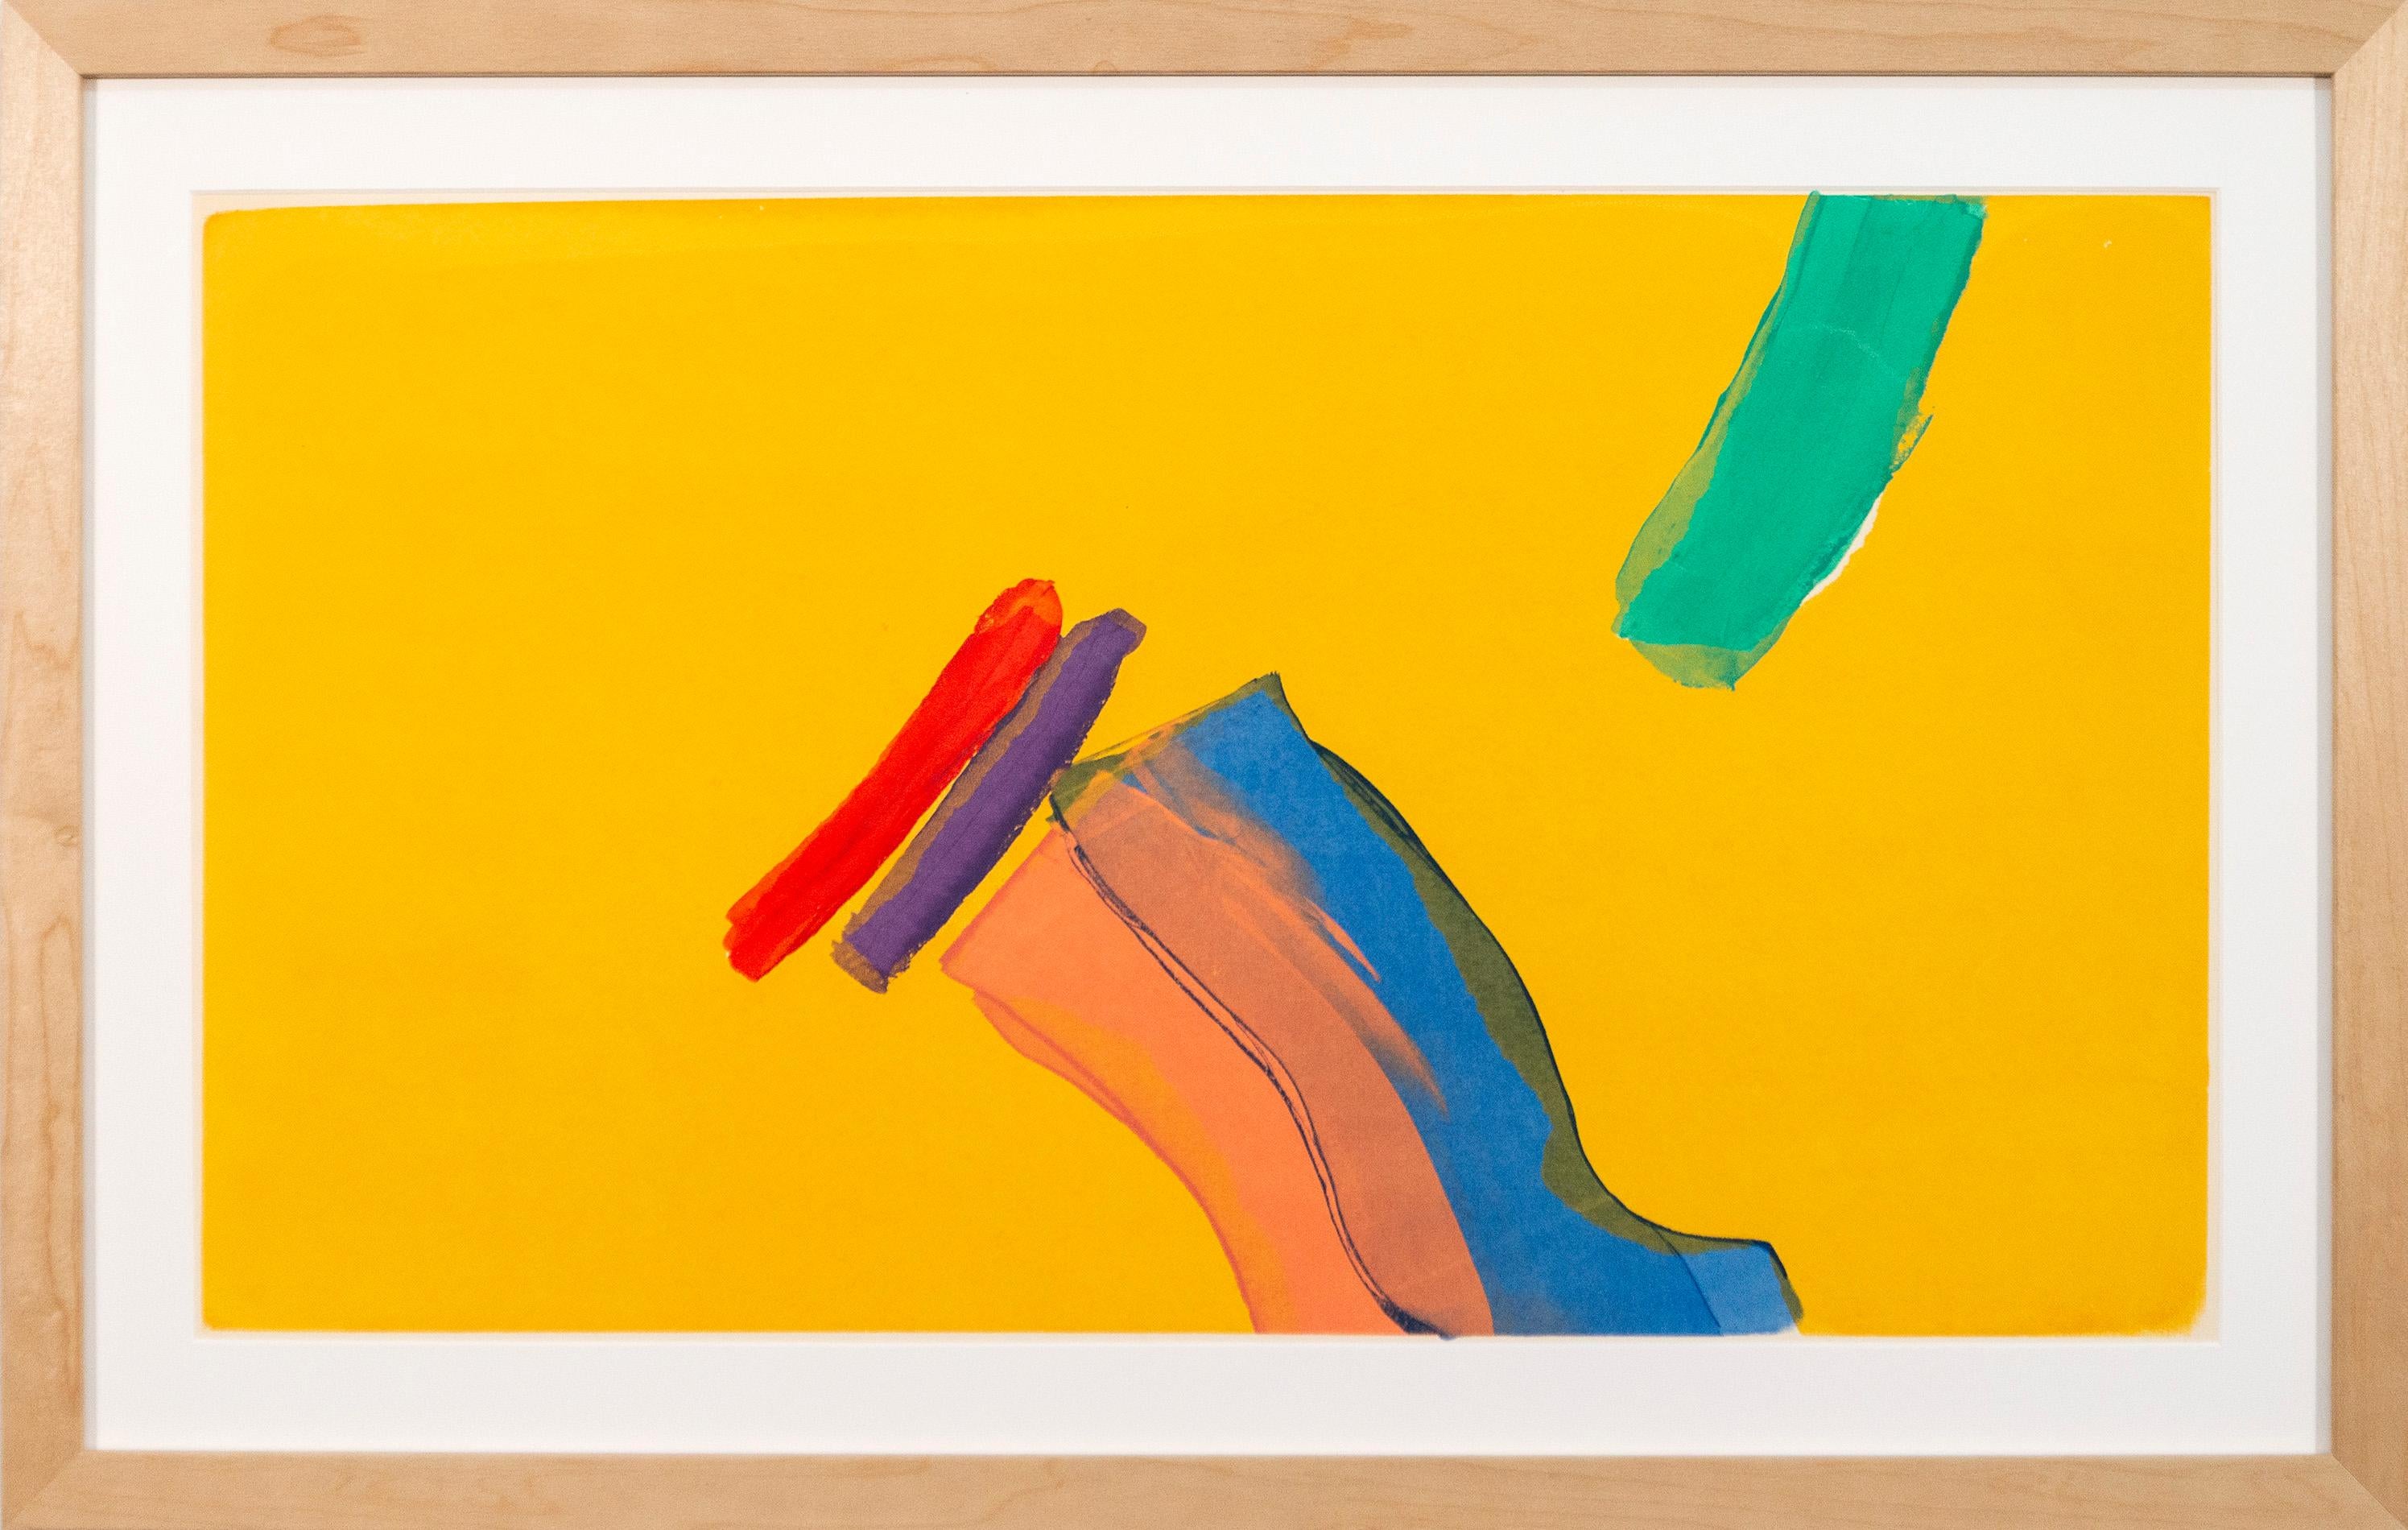 Moving Through - collage de papier coloré, contemporain, abstrait gestuel - Print de Yvonne Lammerich